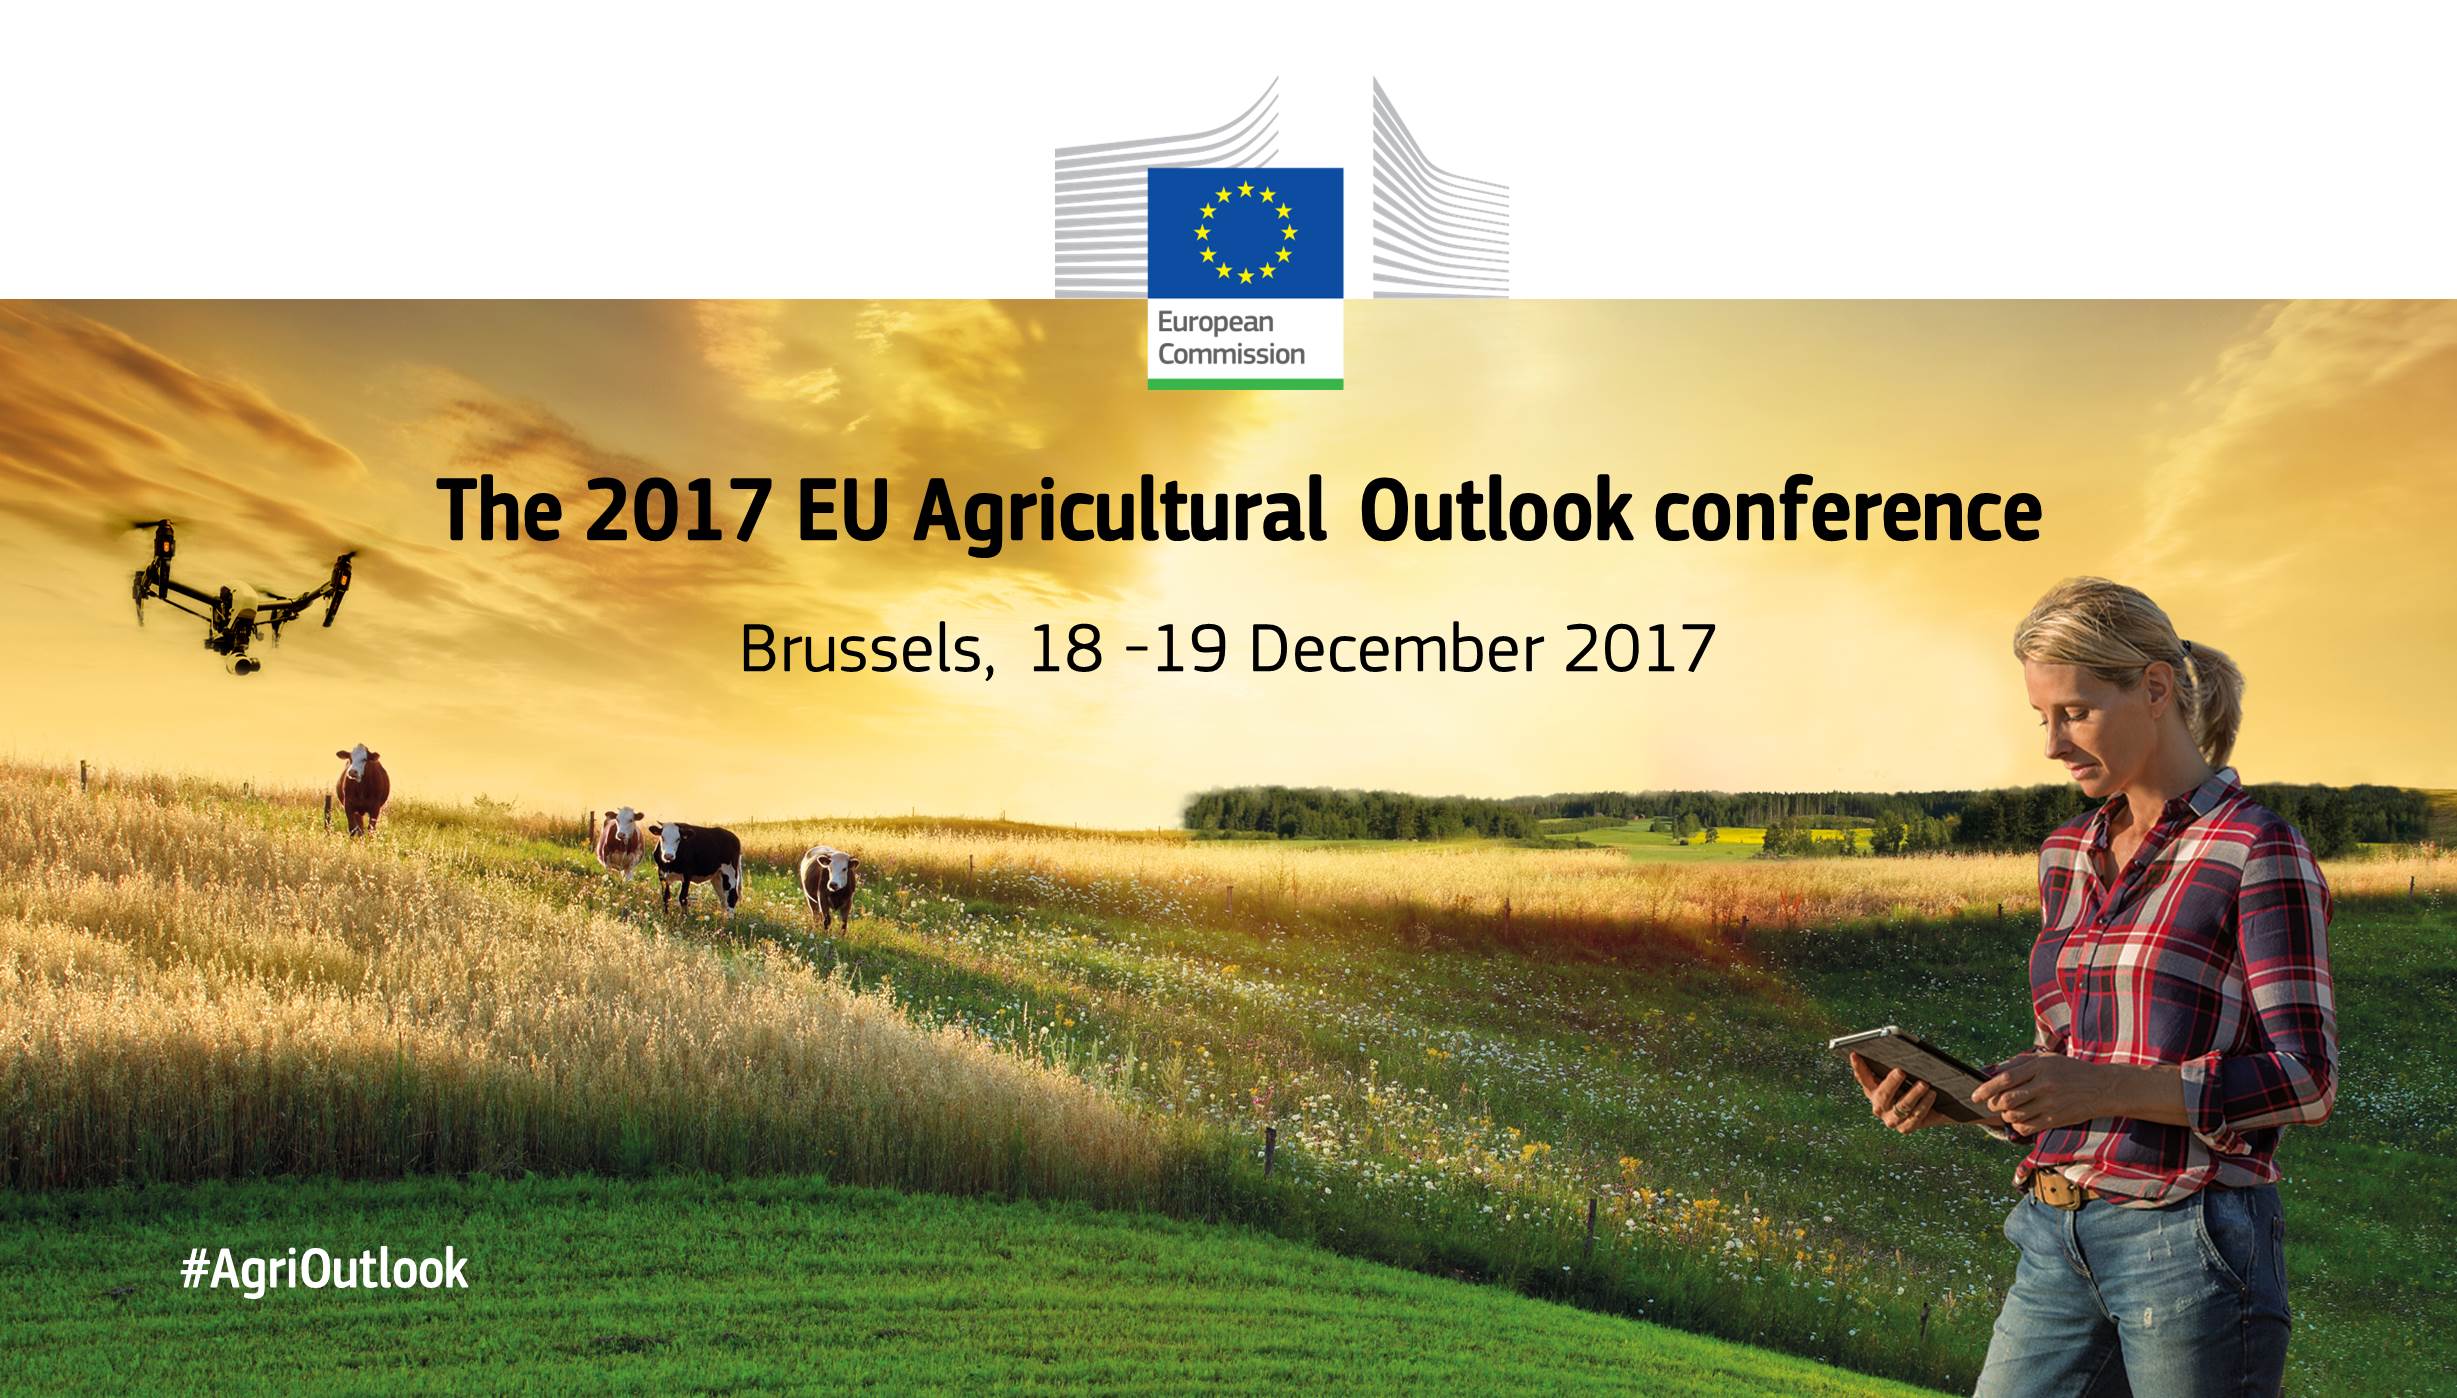 Outlook Conference Brussels 18-19 December 2017